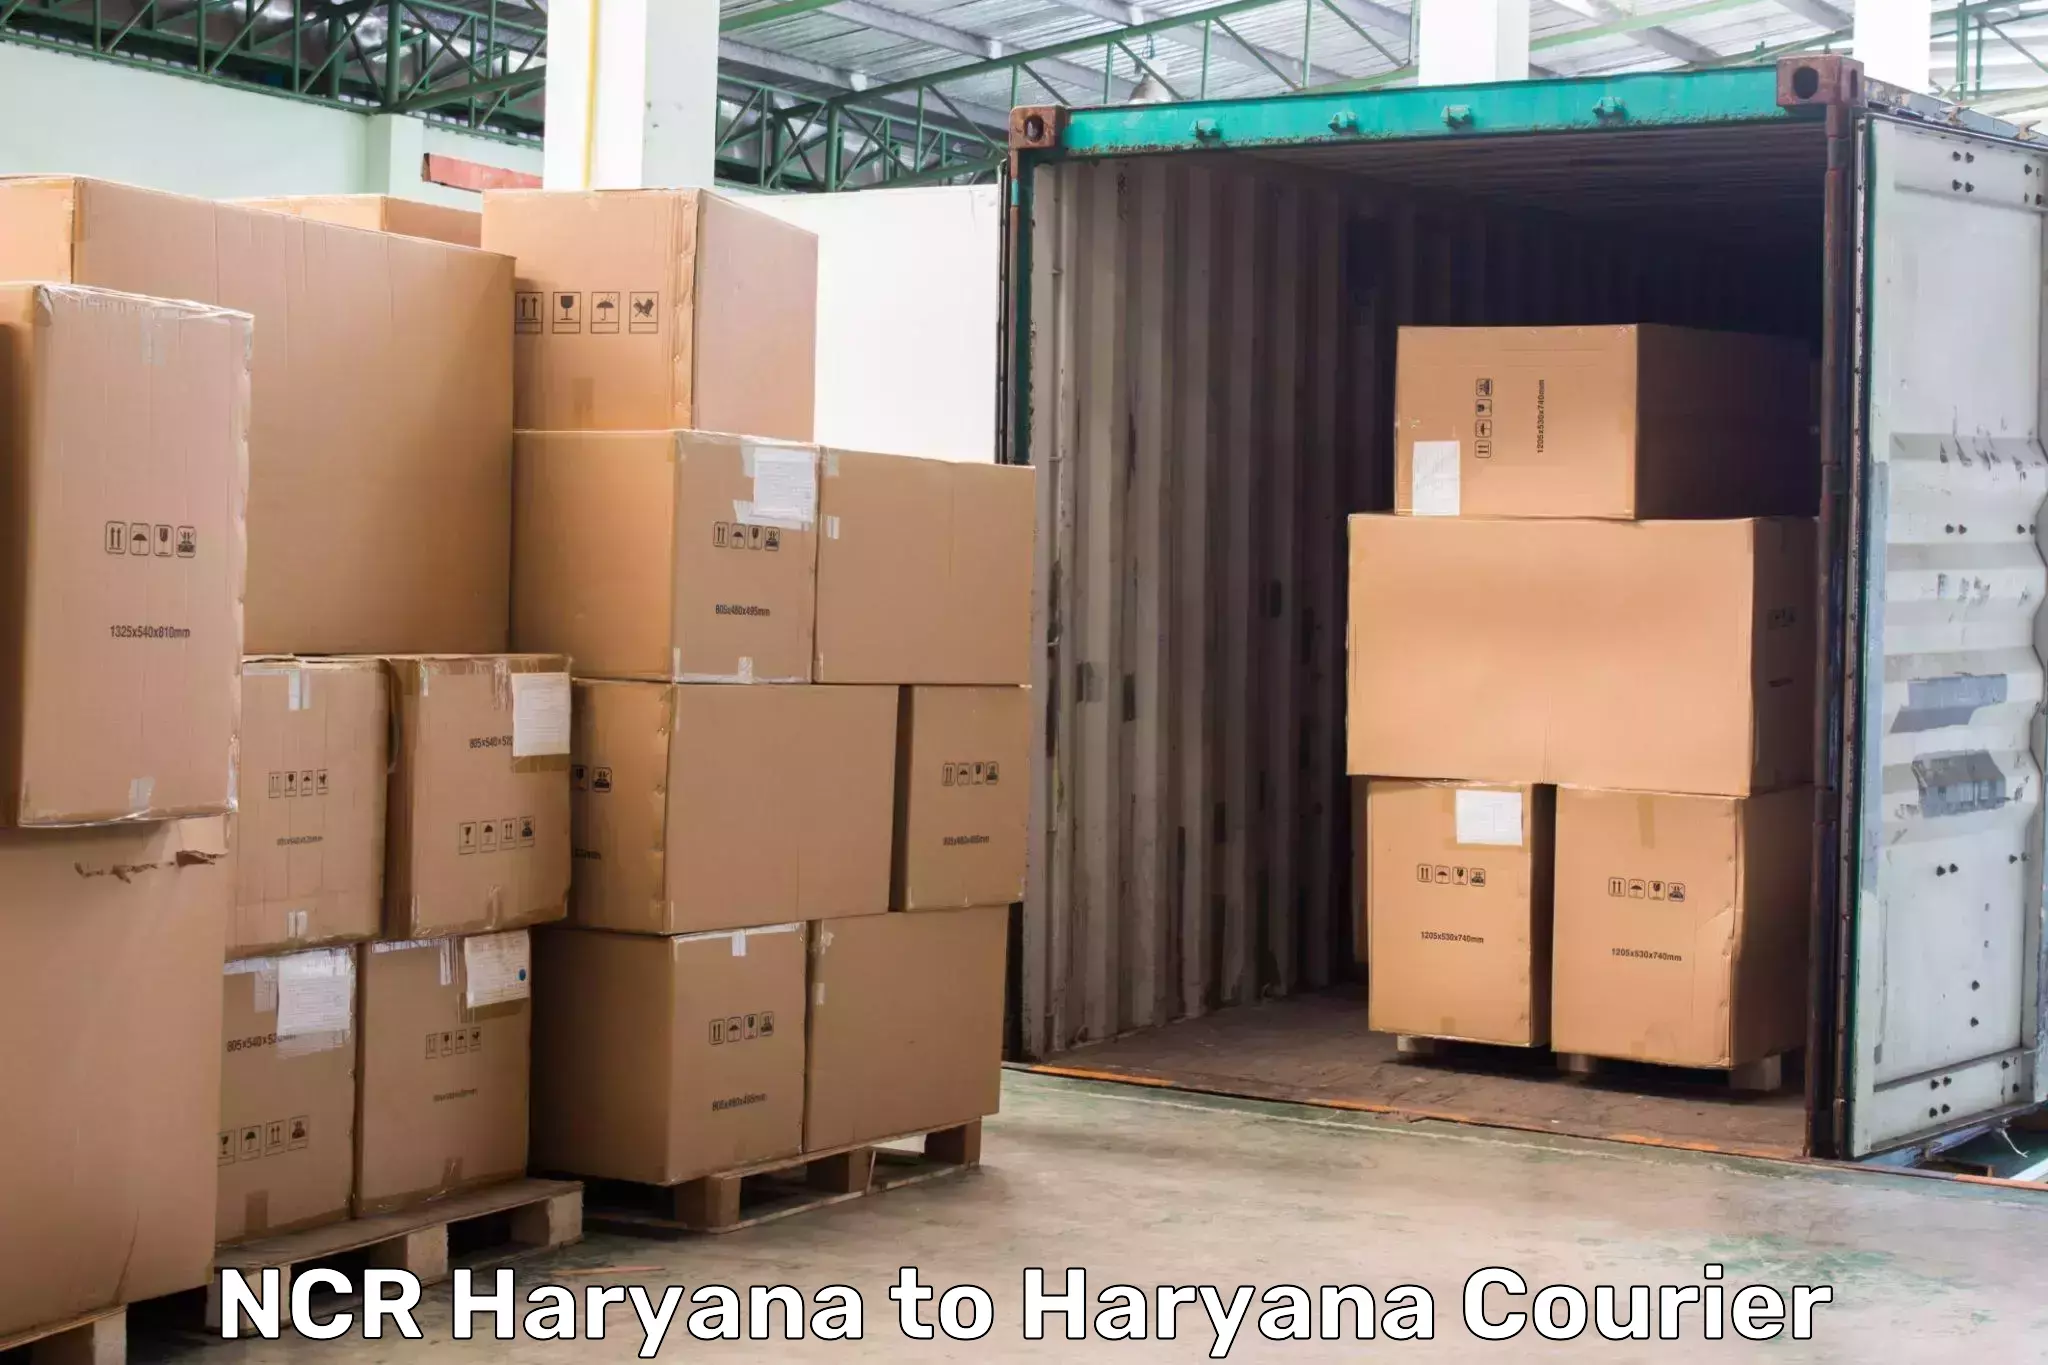 Express logistics providers NCR Haryana to Sohna